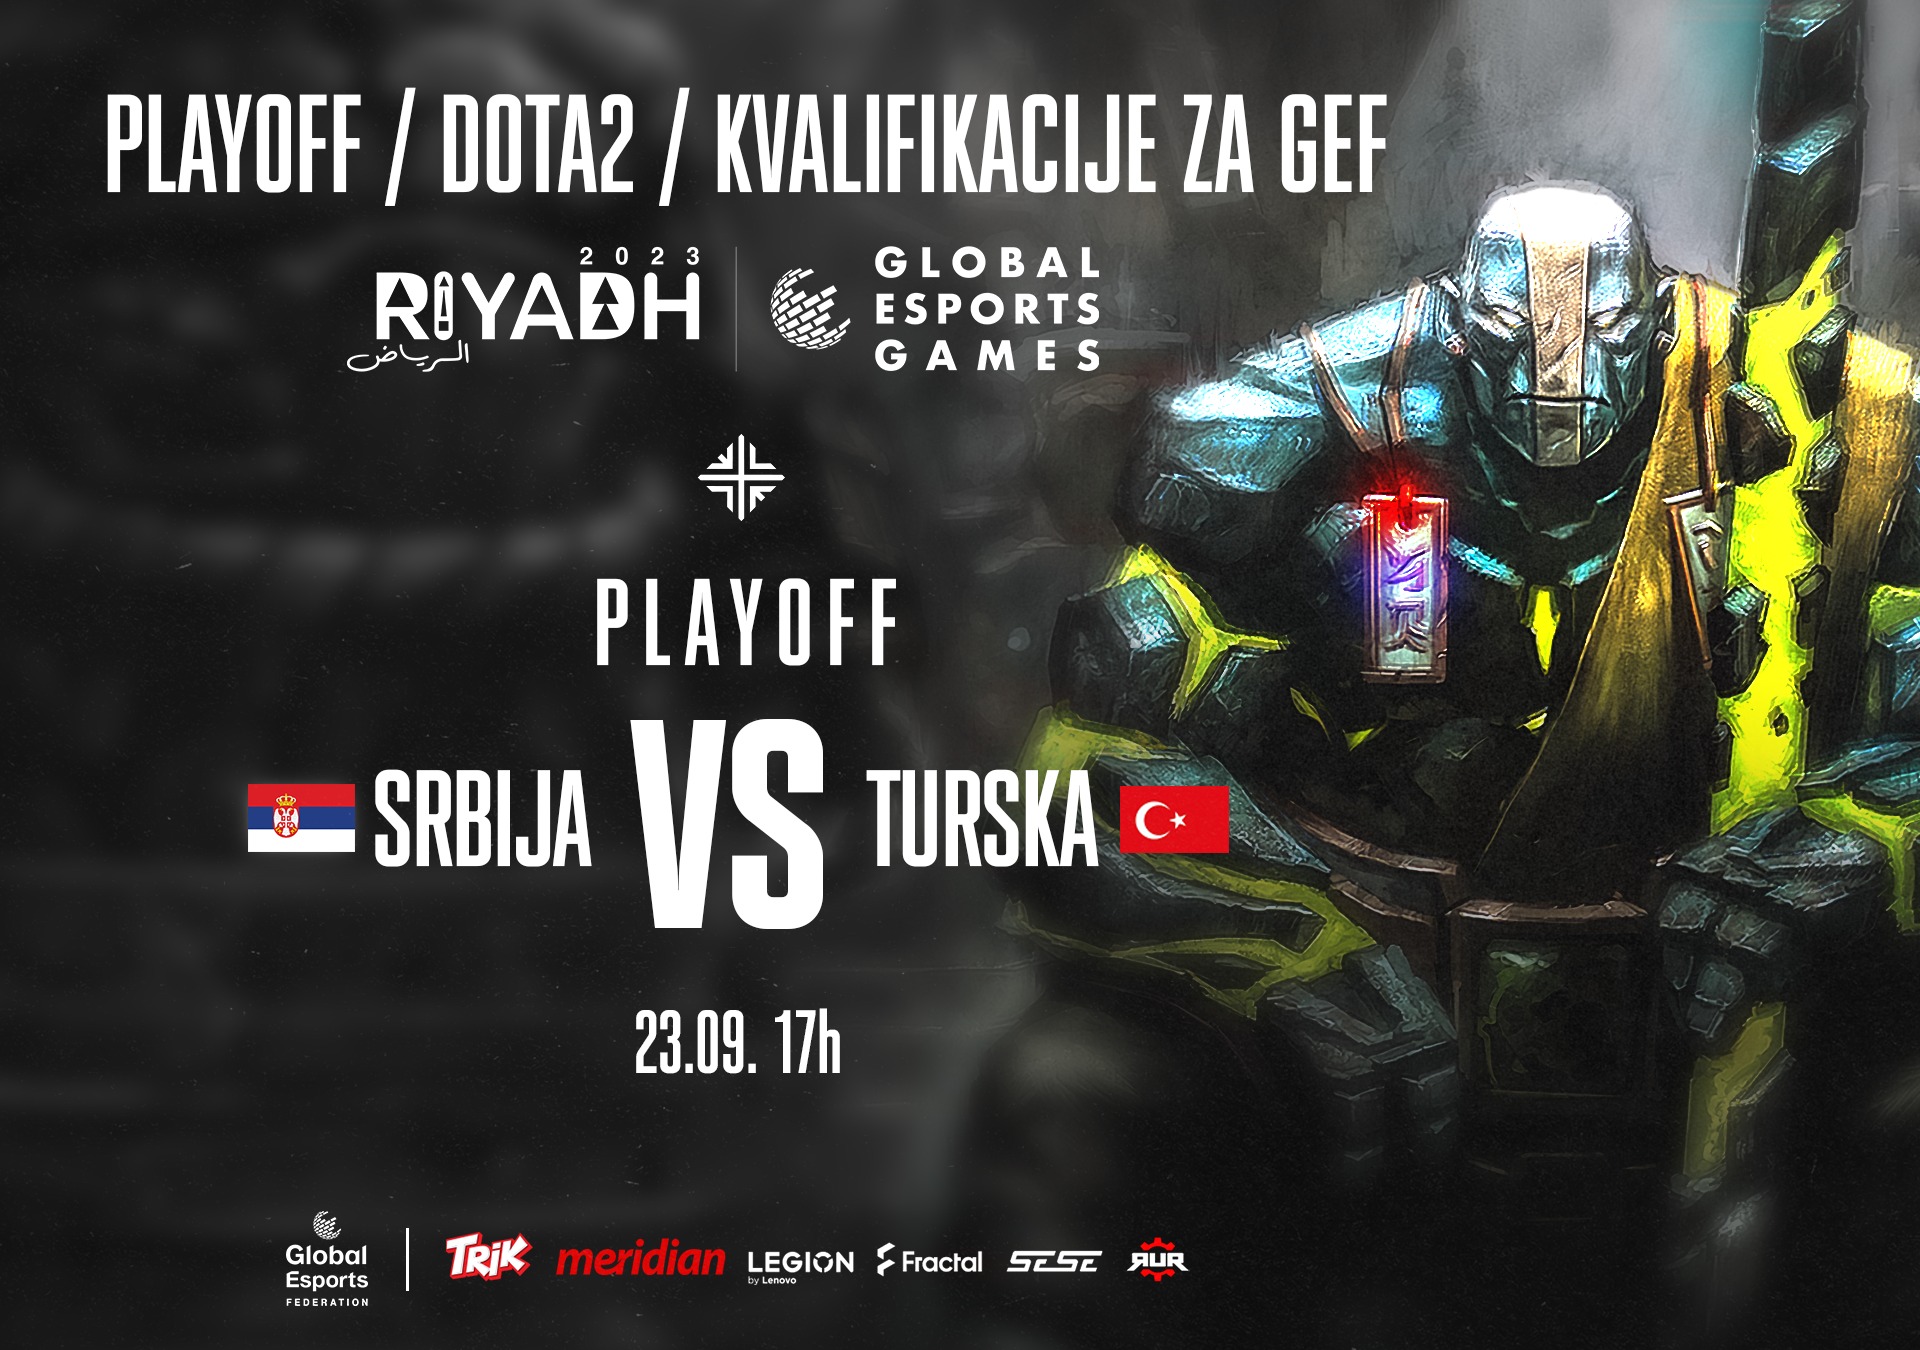 srbija-turska-geg2023-dota2-quali-finals-1